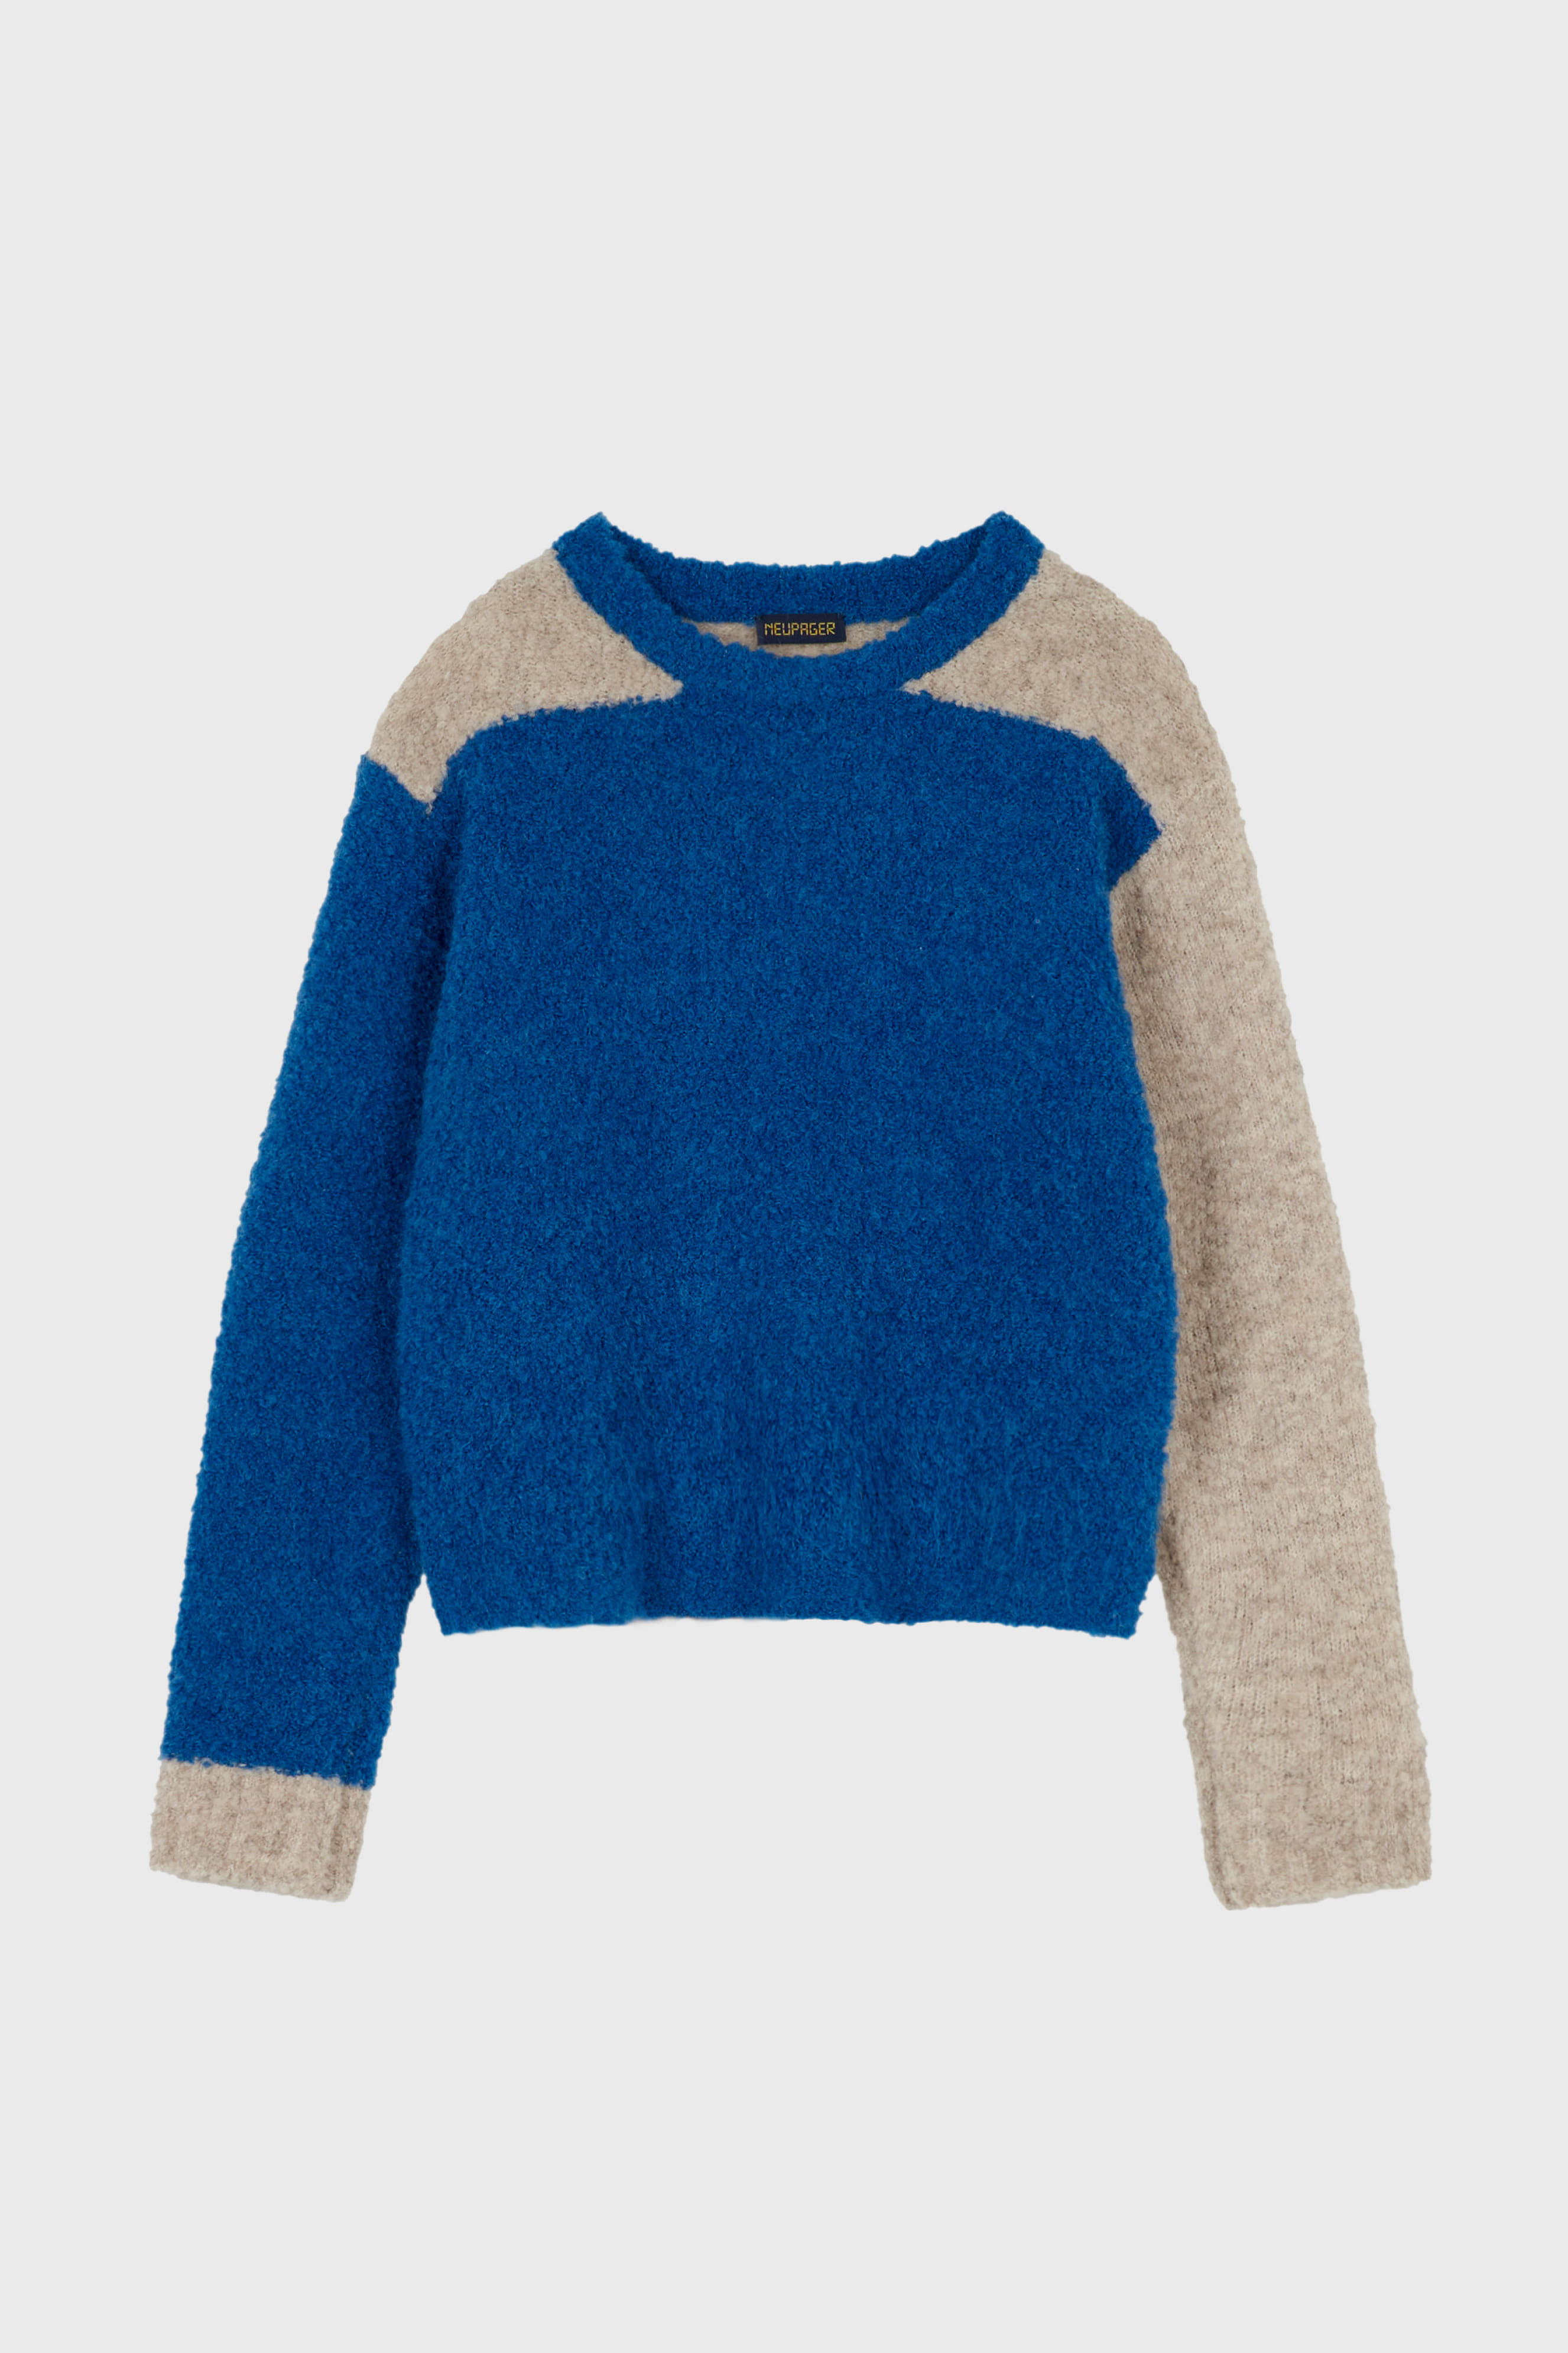 boucle knit top - blue